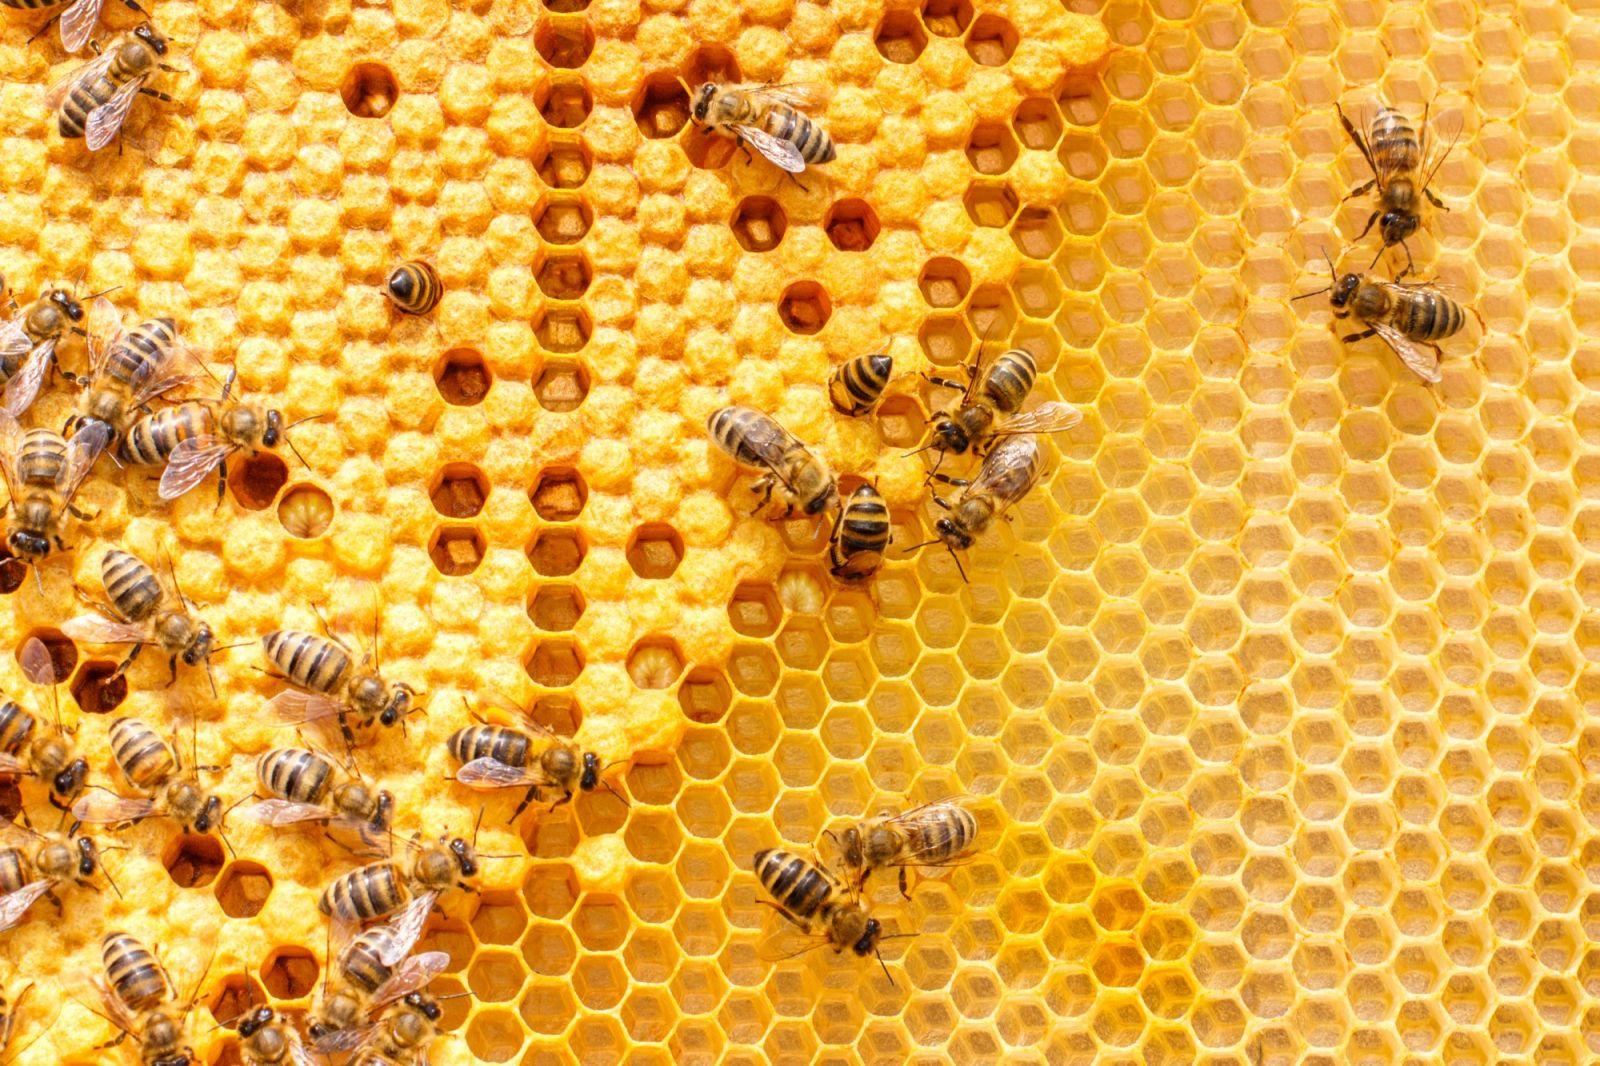 Пчелы строят соты